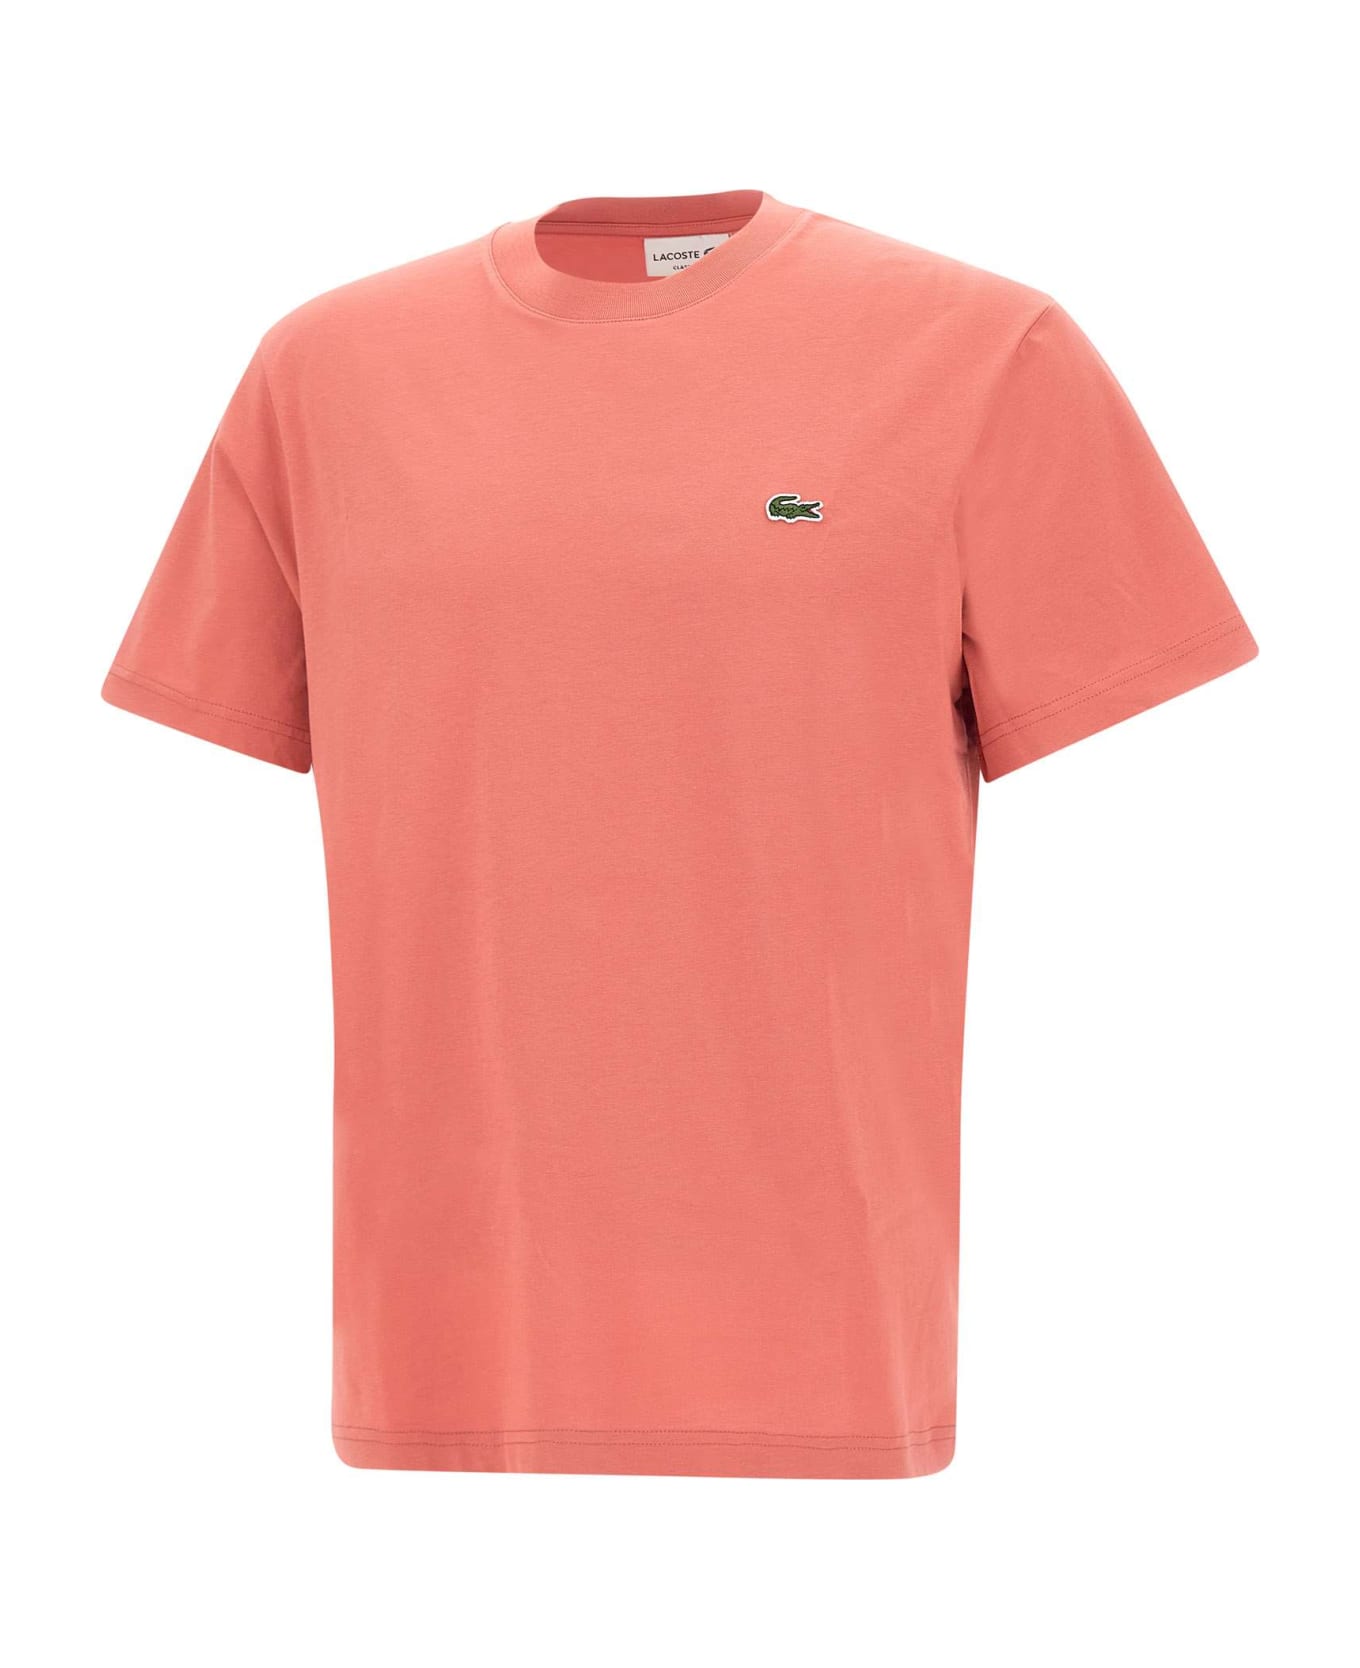 Lacoste Cotton T-shirt - ORANGE シャツ